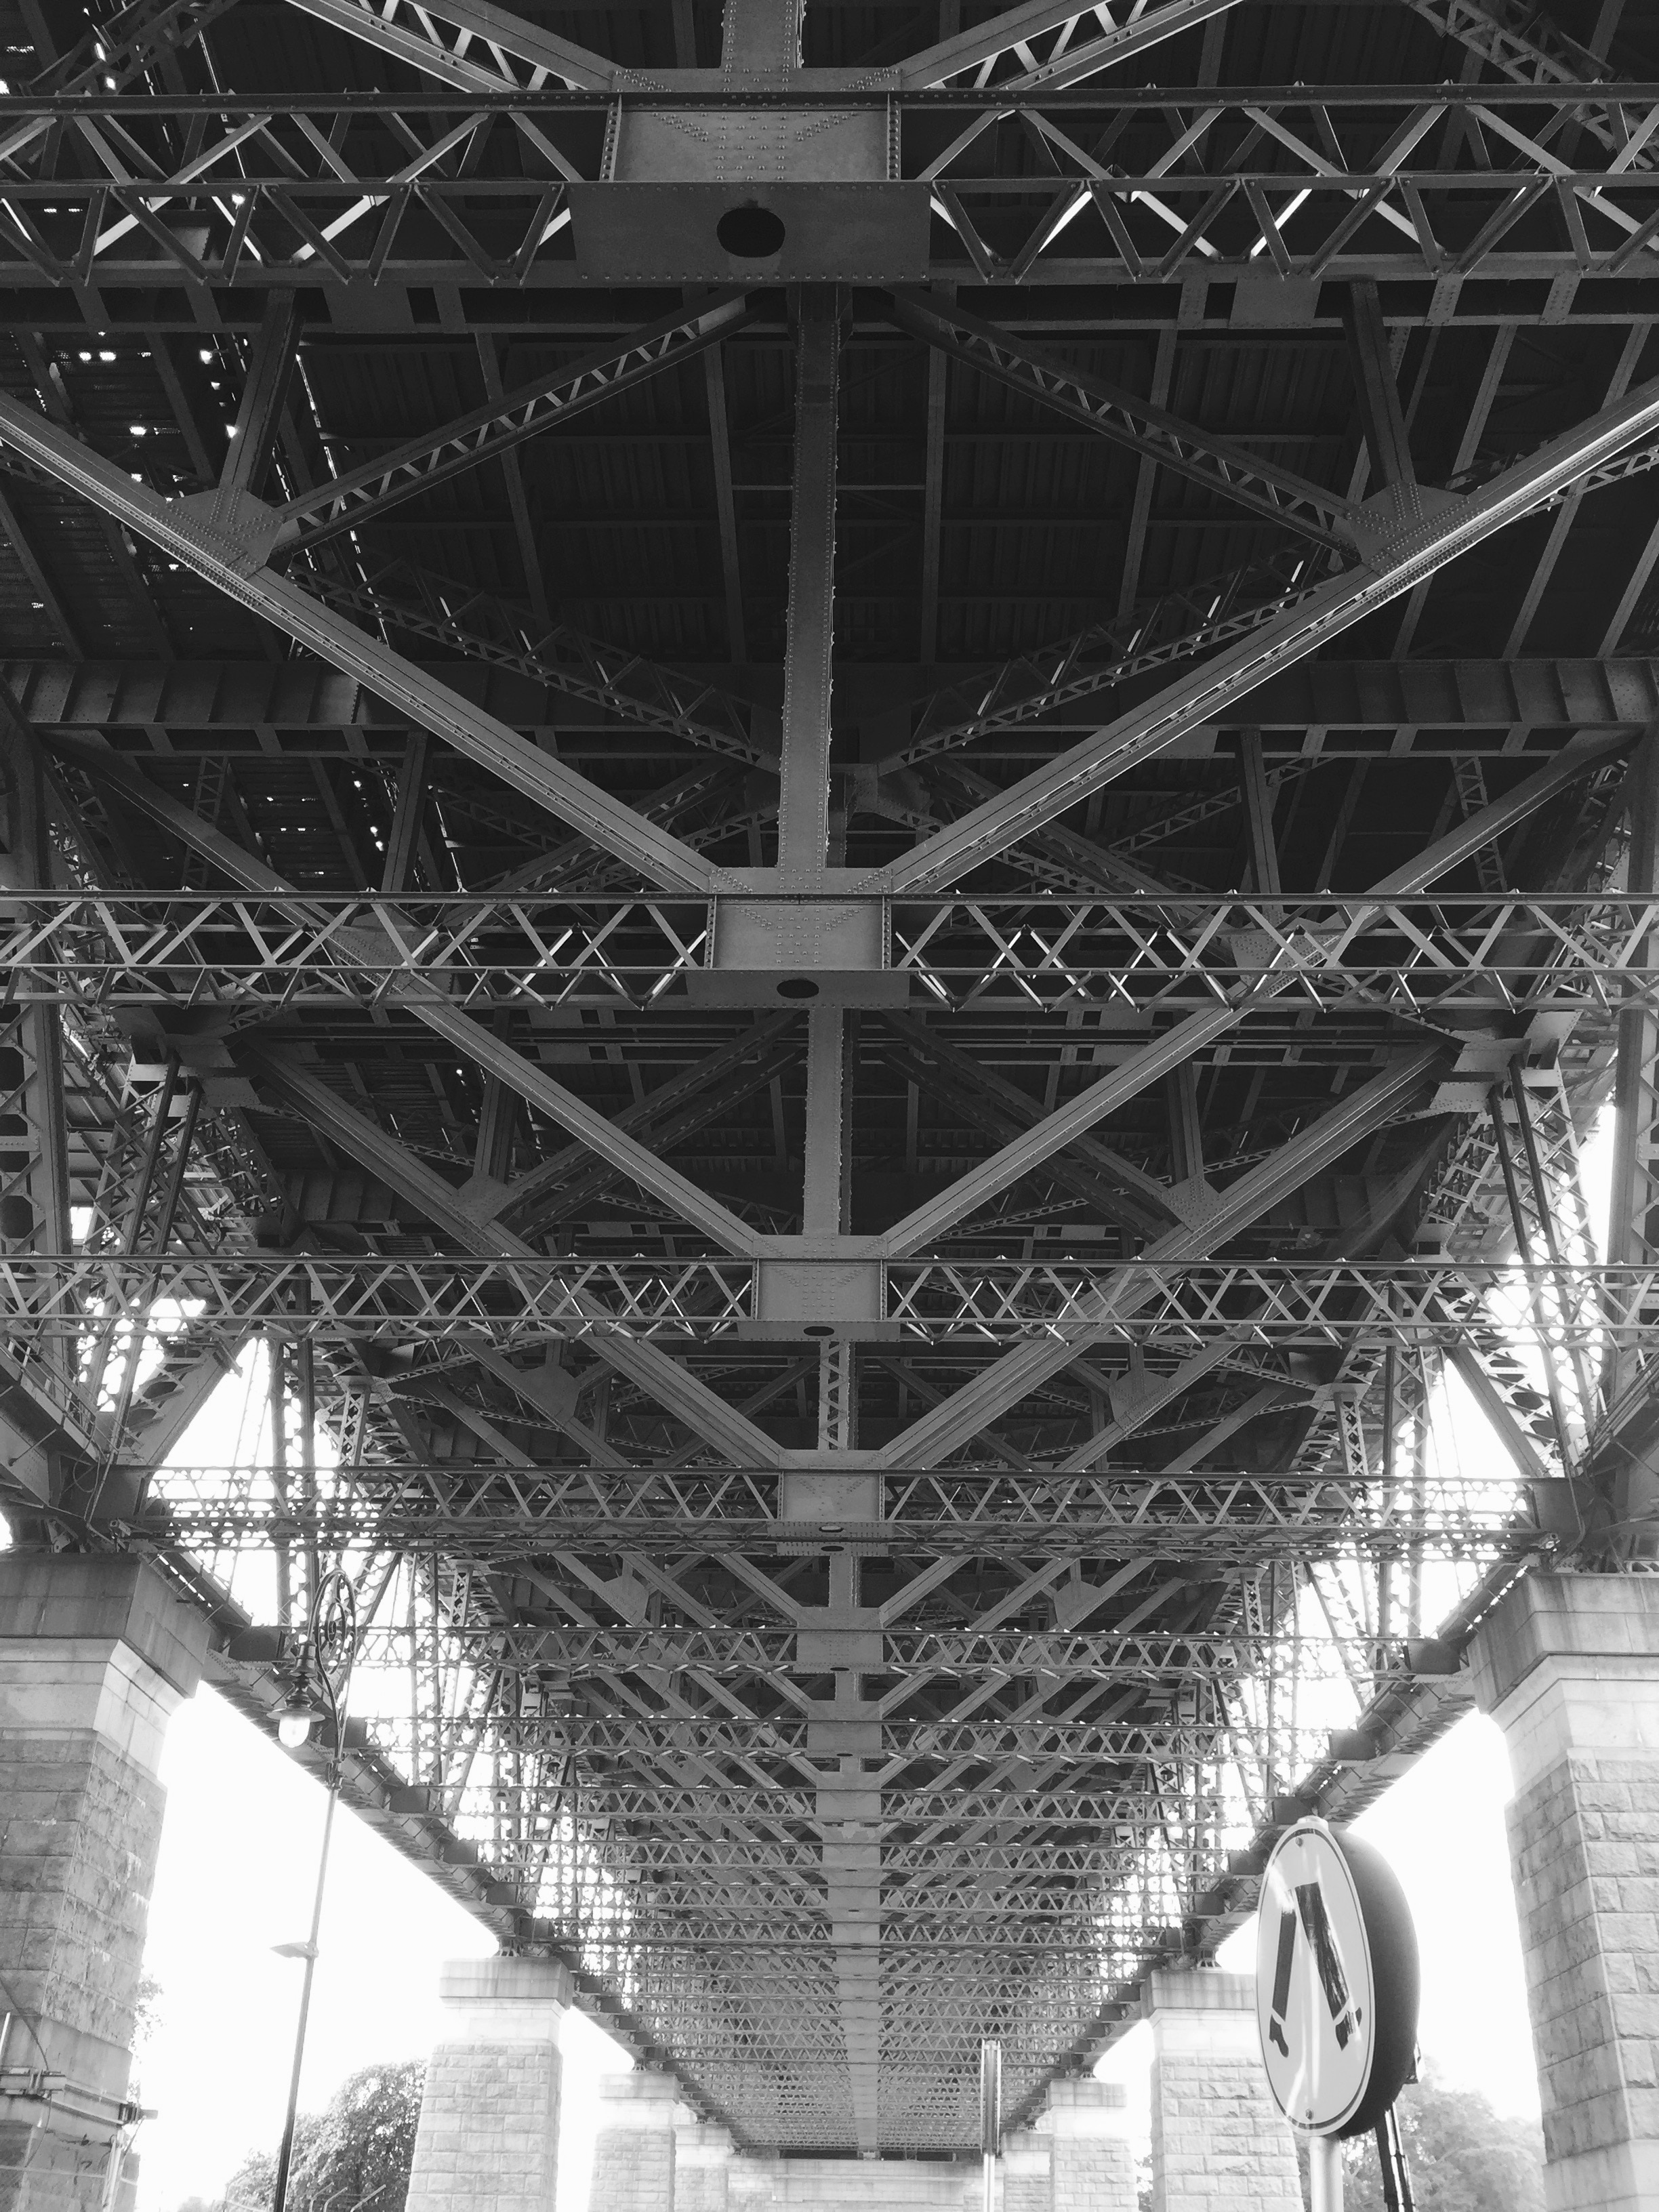 steel truss bridge at daytime